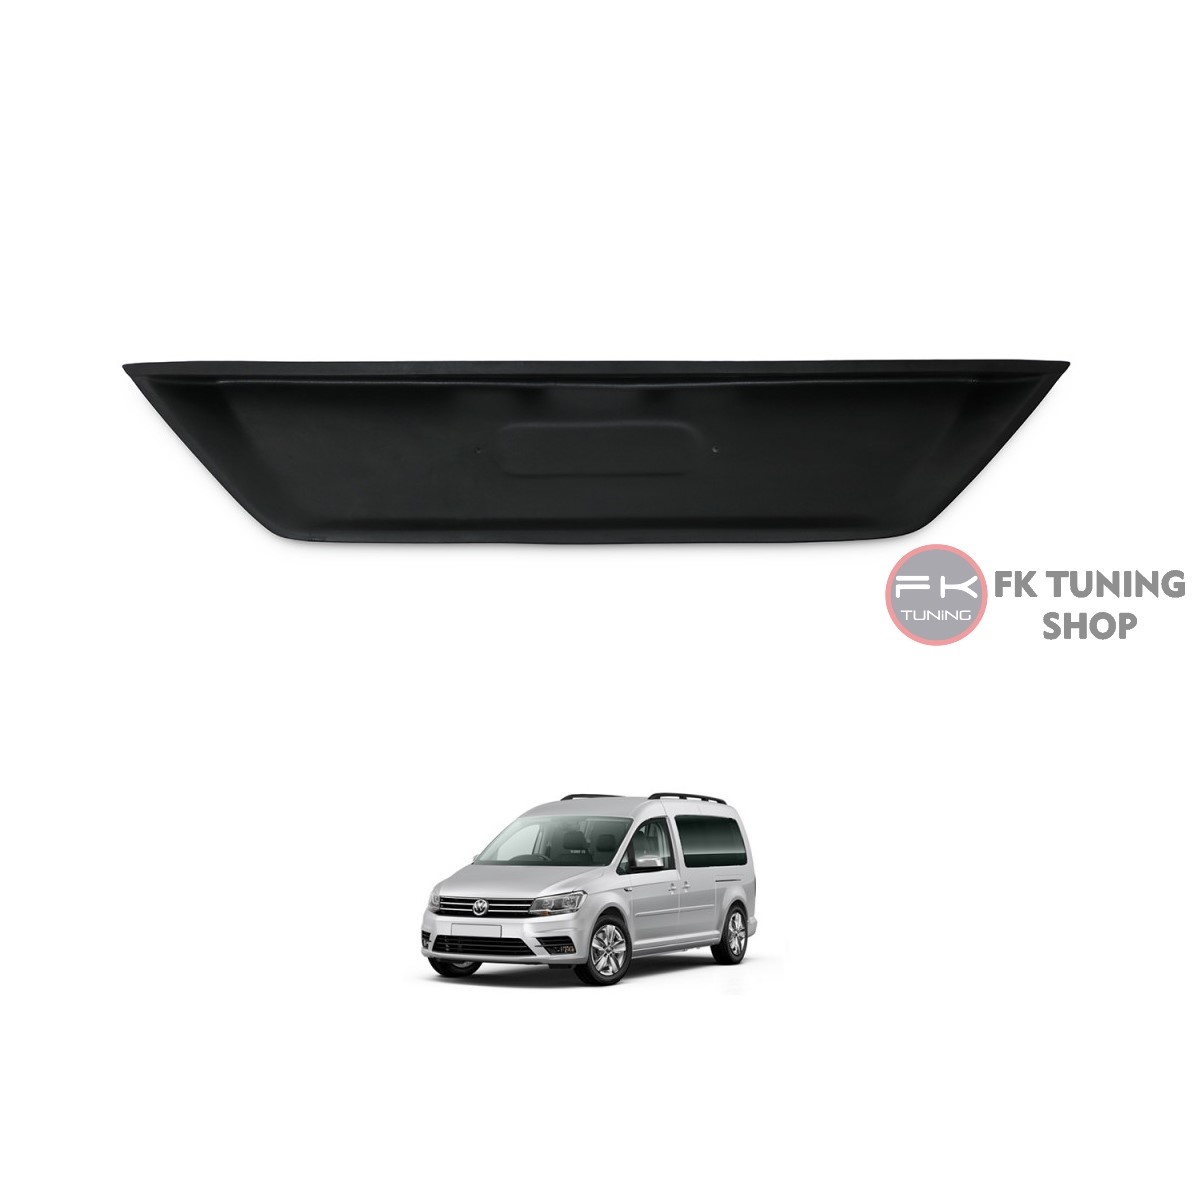 Volkswagen Caddy Plaka Yeri Kaplaması 2015-2020 Siyah Renk